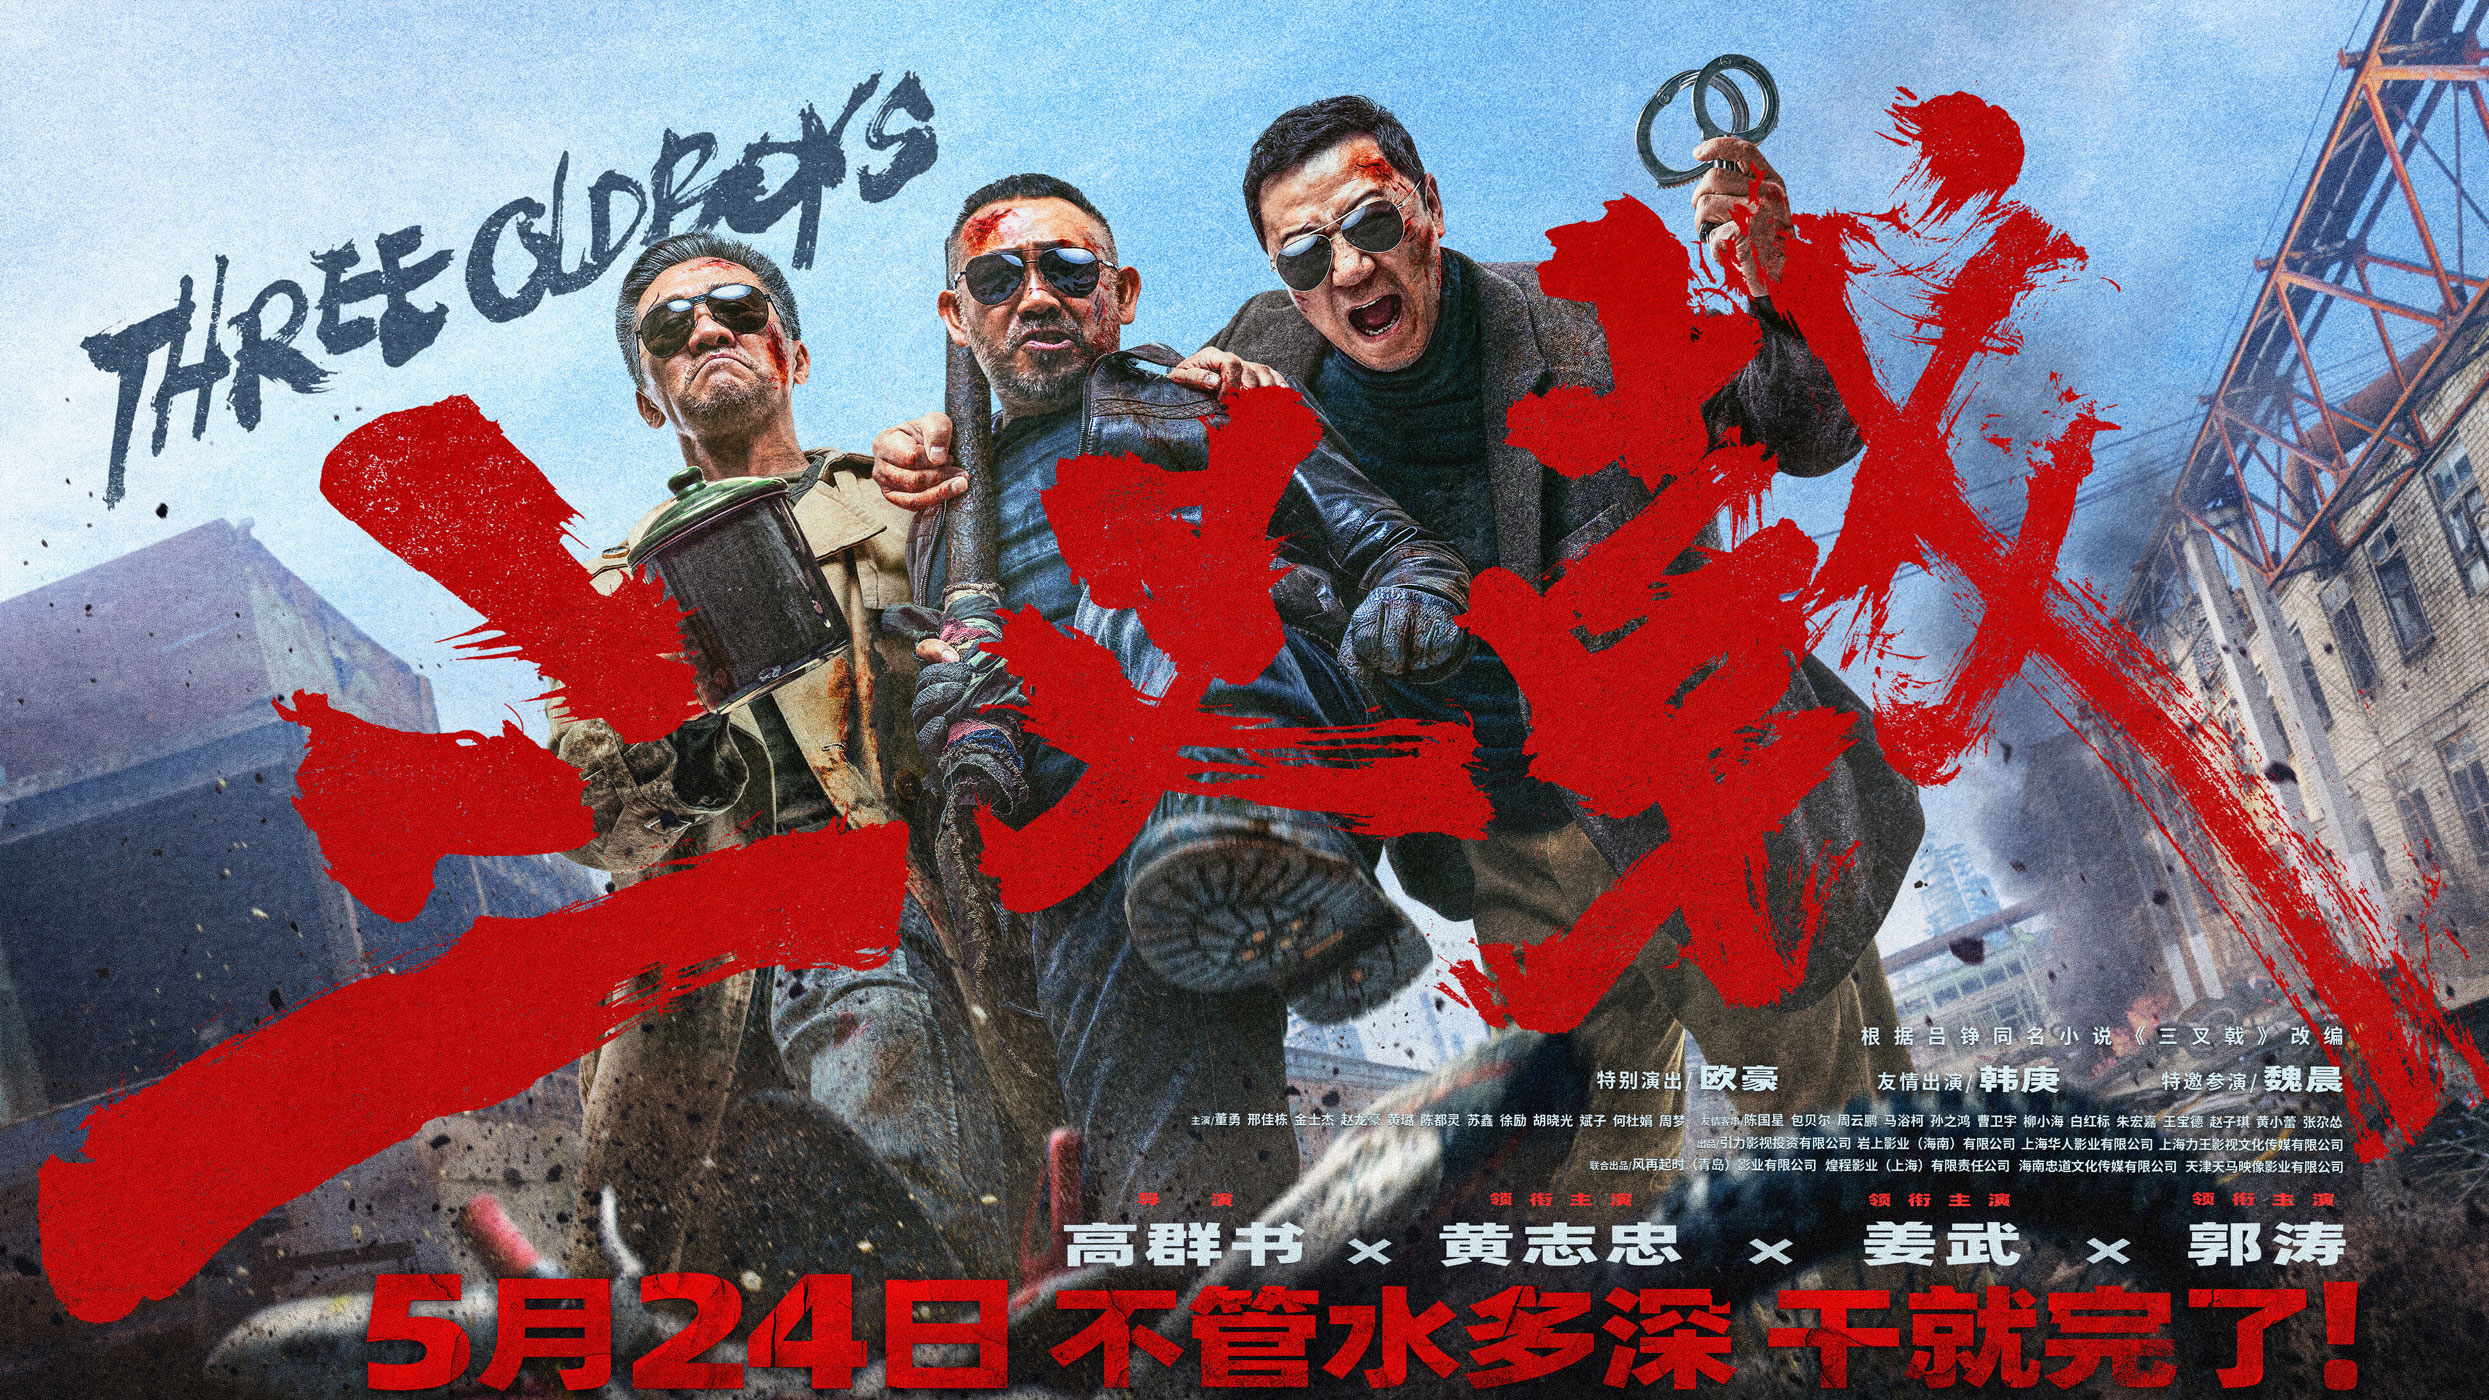 黄志忠姜武郭涛大尺度犯罪电影《三叉戟》定档5月24日 幕后水深干就完了！ 